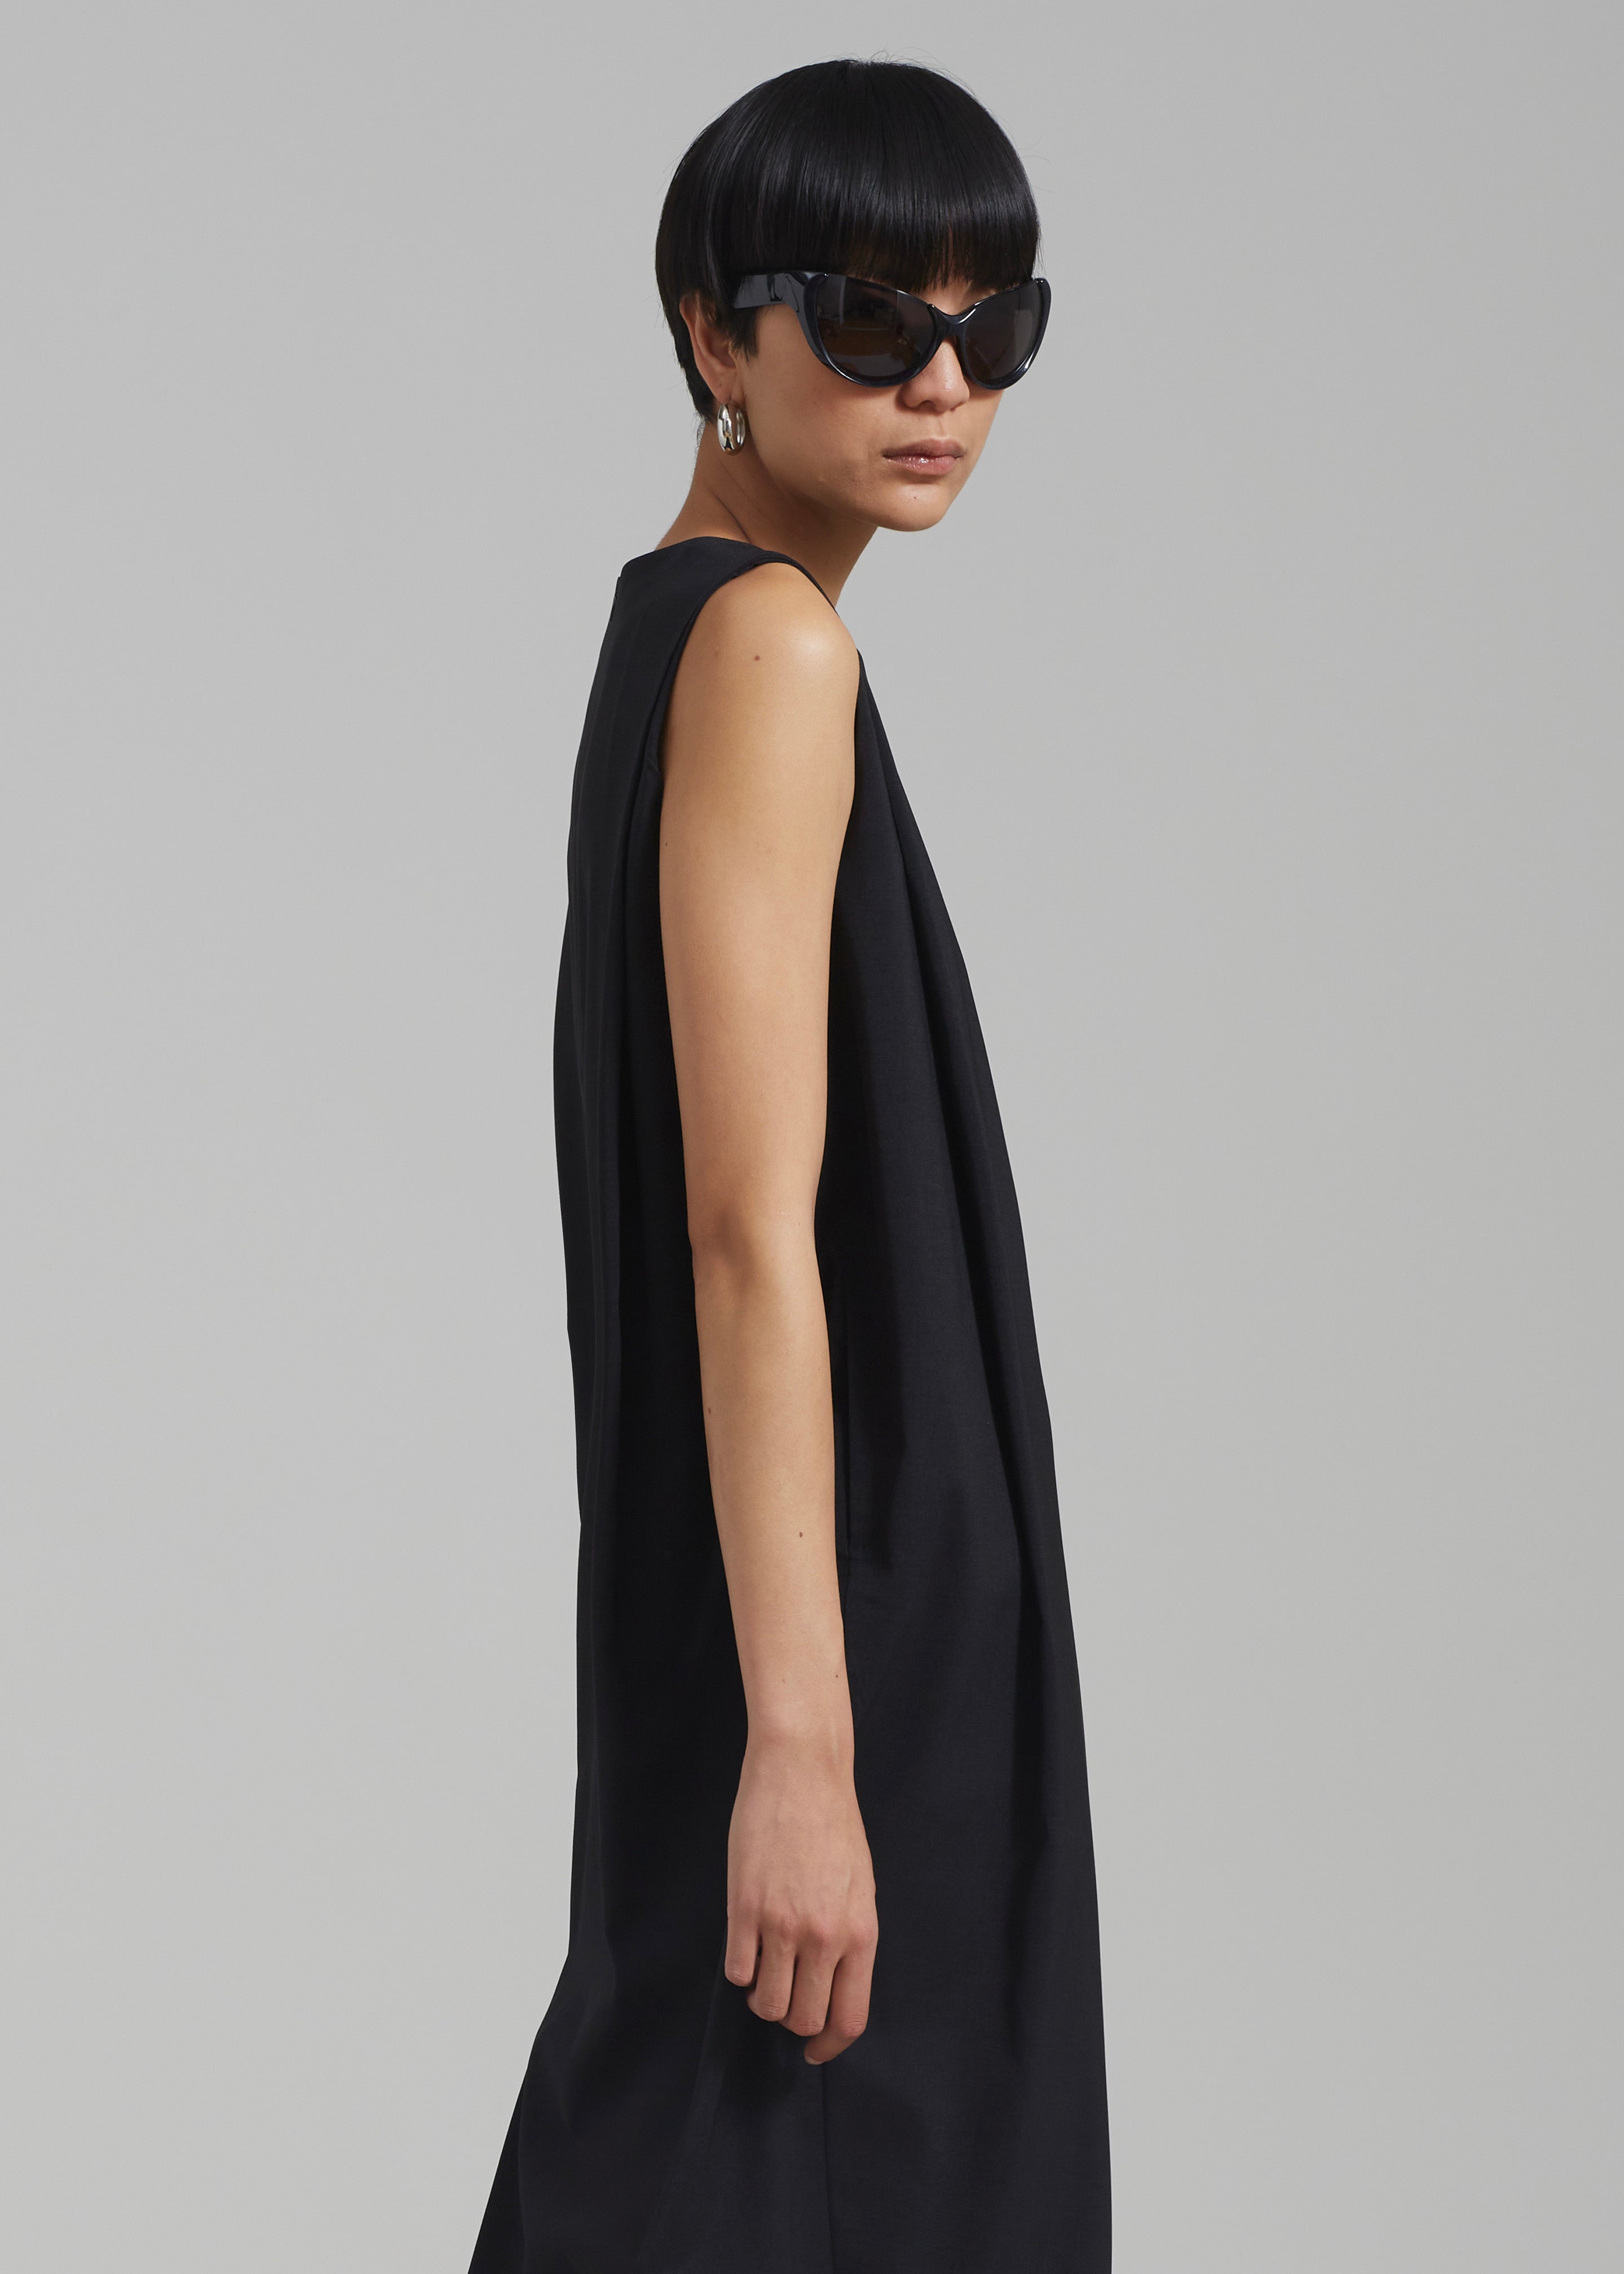 Eryn Sleeveless Pintuck Dress - Black - 3